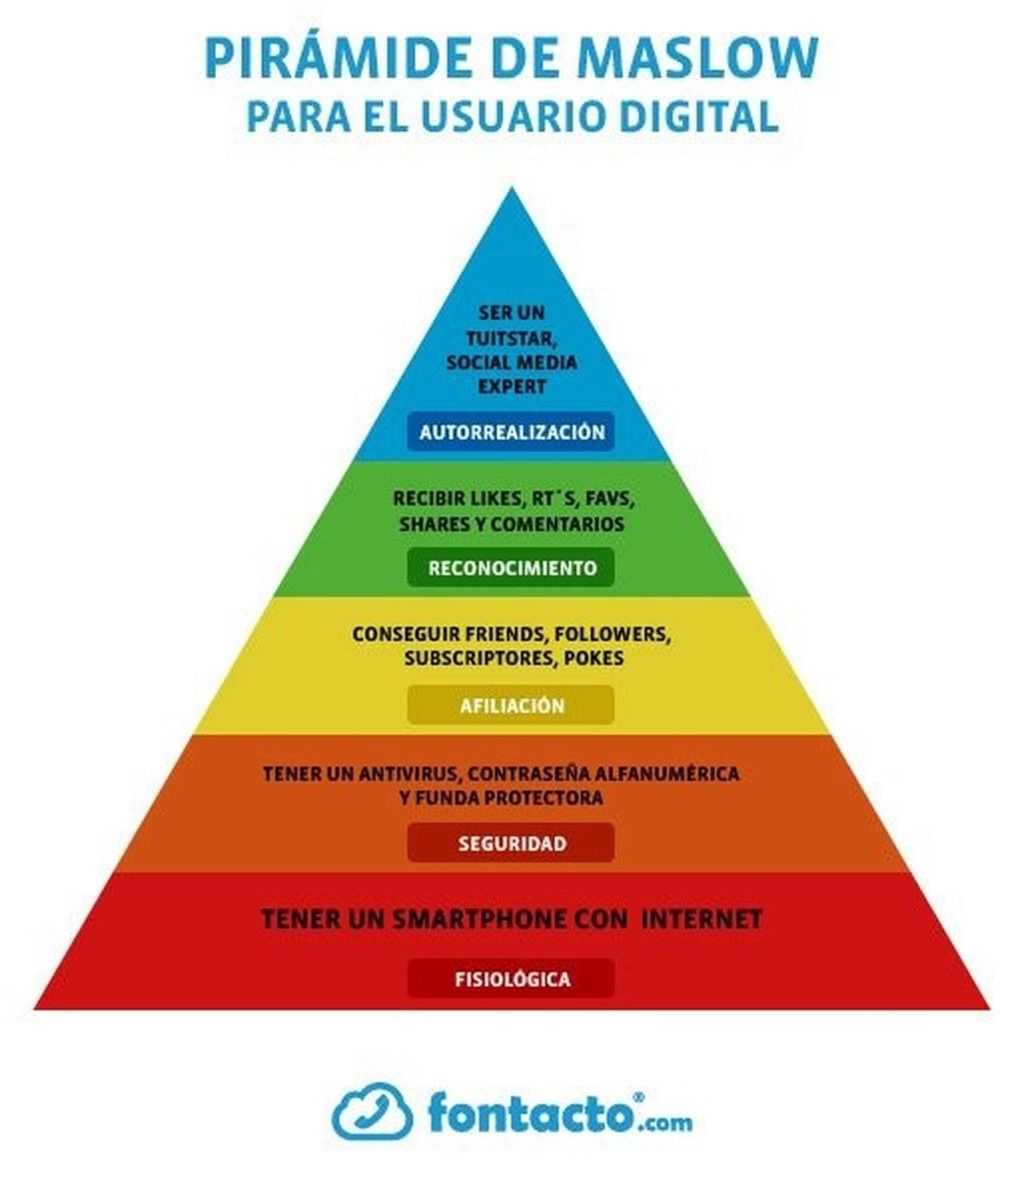 La pirámide de Maslow del usuario digital